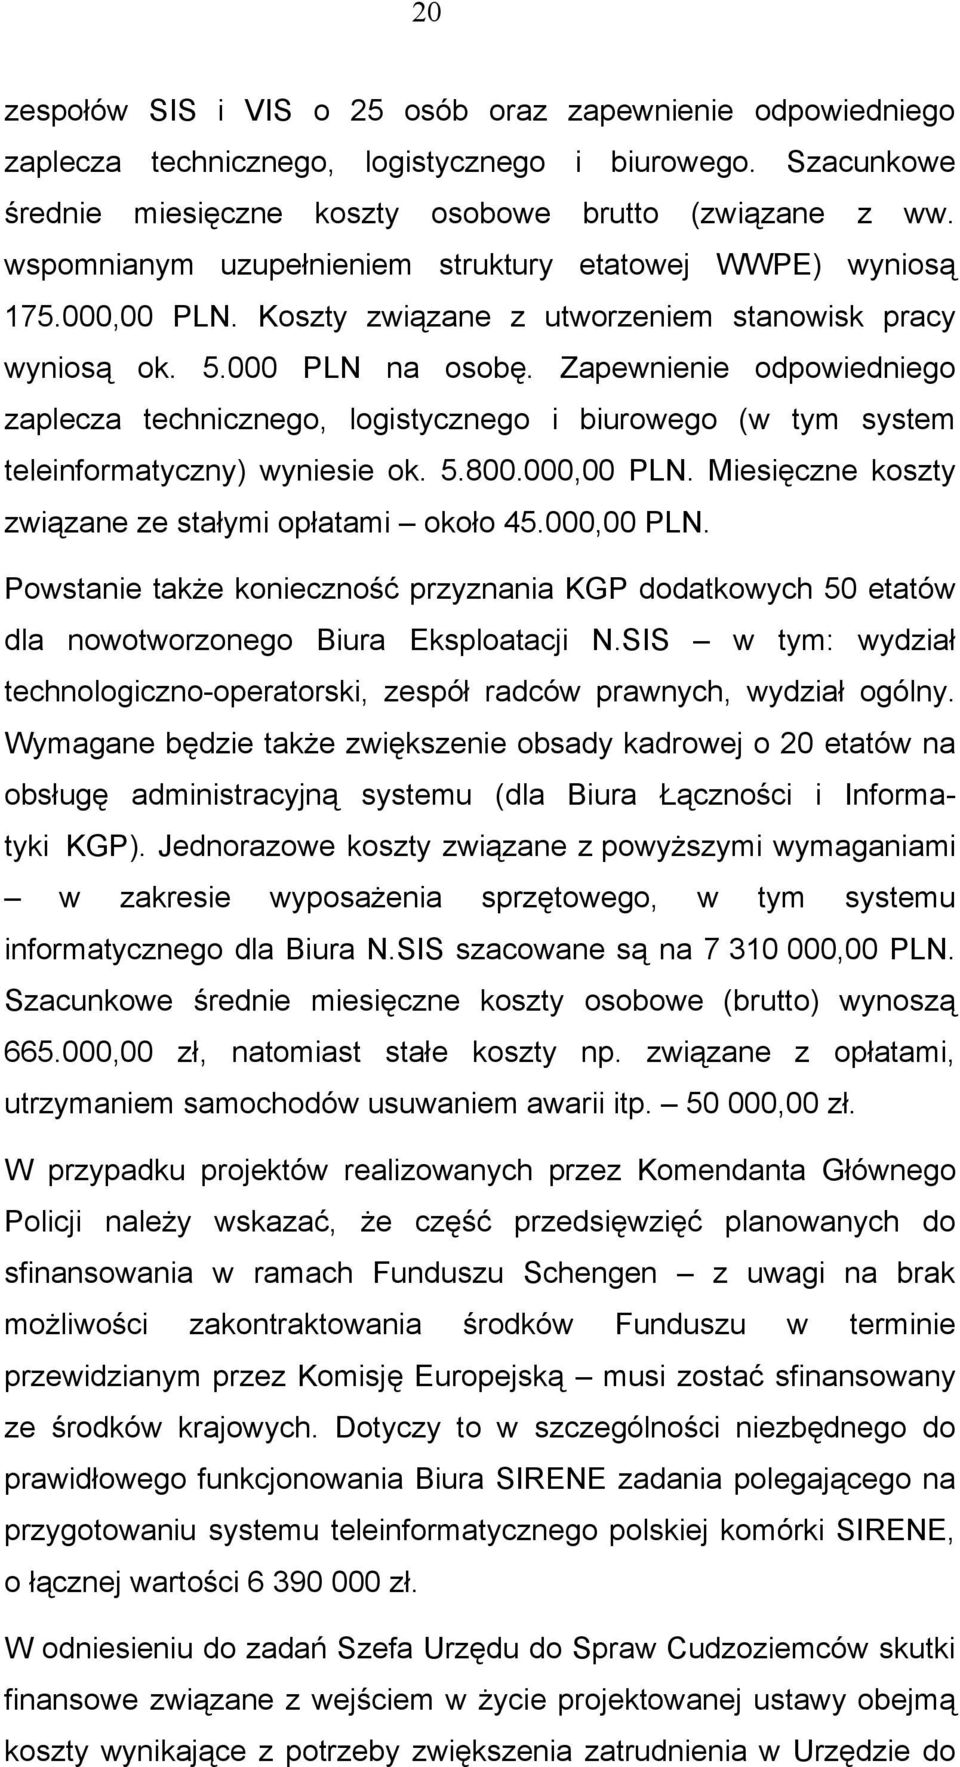 Zapewnienie odpowiedniego zaplecza technicznego, logistycznego i biurowego (w tym system teleinformatyczny) wyniesie ok. 5.800.000,00 PLN. Miesięczne koszty związane ze stałymi opłatami około 45.